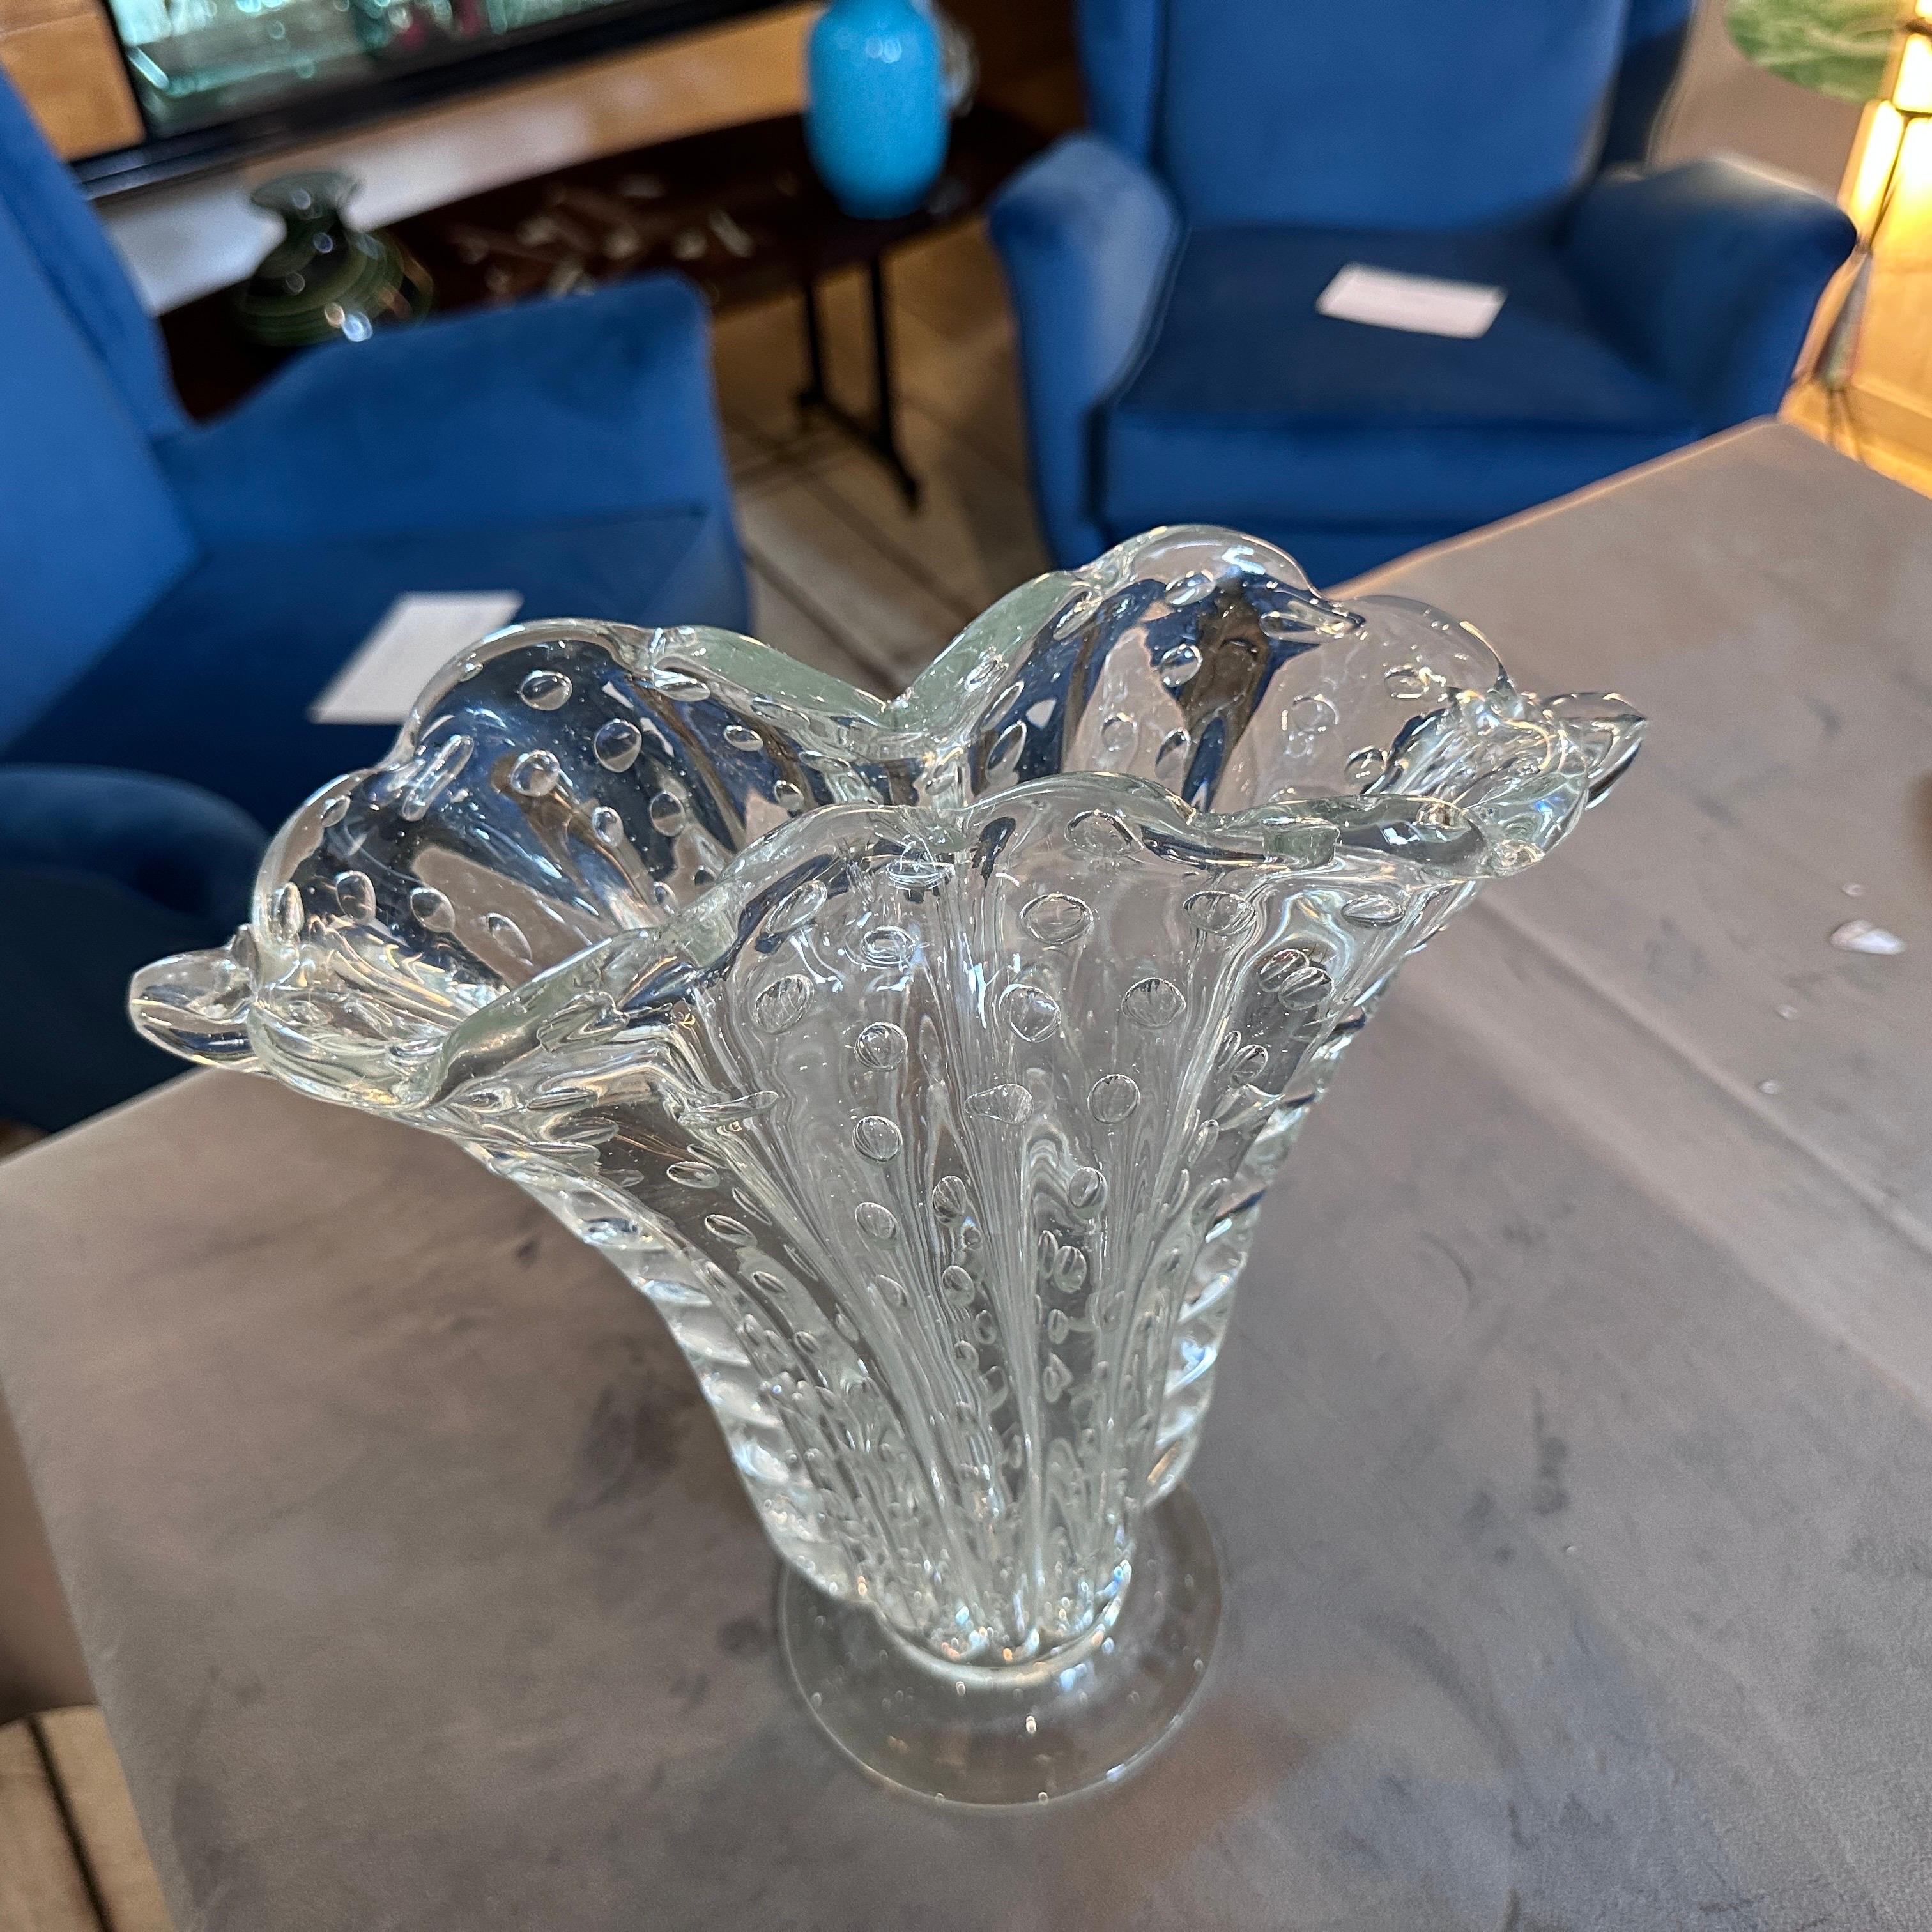 Vase en verre transparent de Murano conçu et fabriqué à Venise par Barovier dans les années 50, il est en très bon état. Le vase de Barovier est une pièce de verre d'art étonnante qui met en valeur la maîtrise de la verrerie de Murano et le style